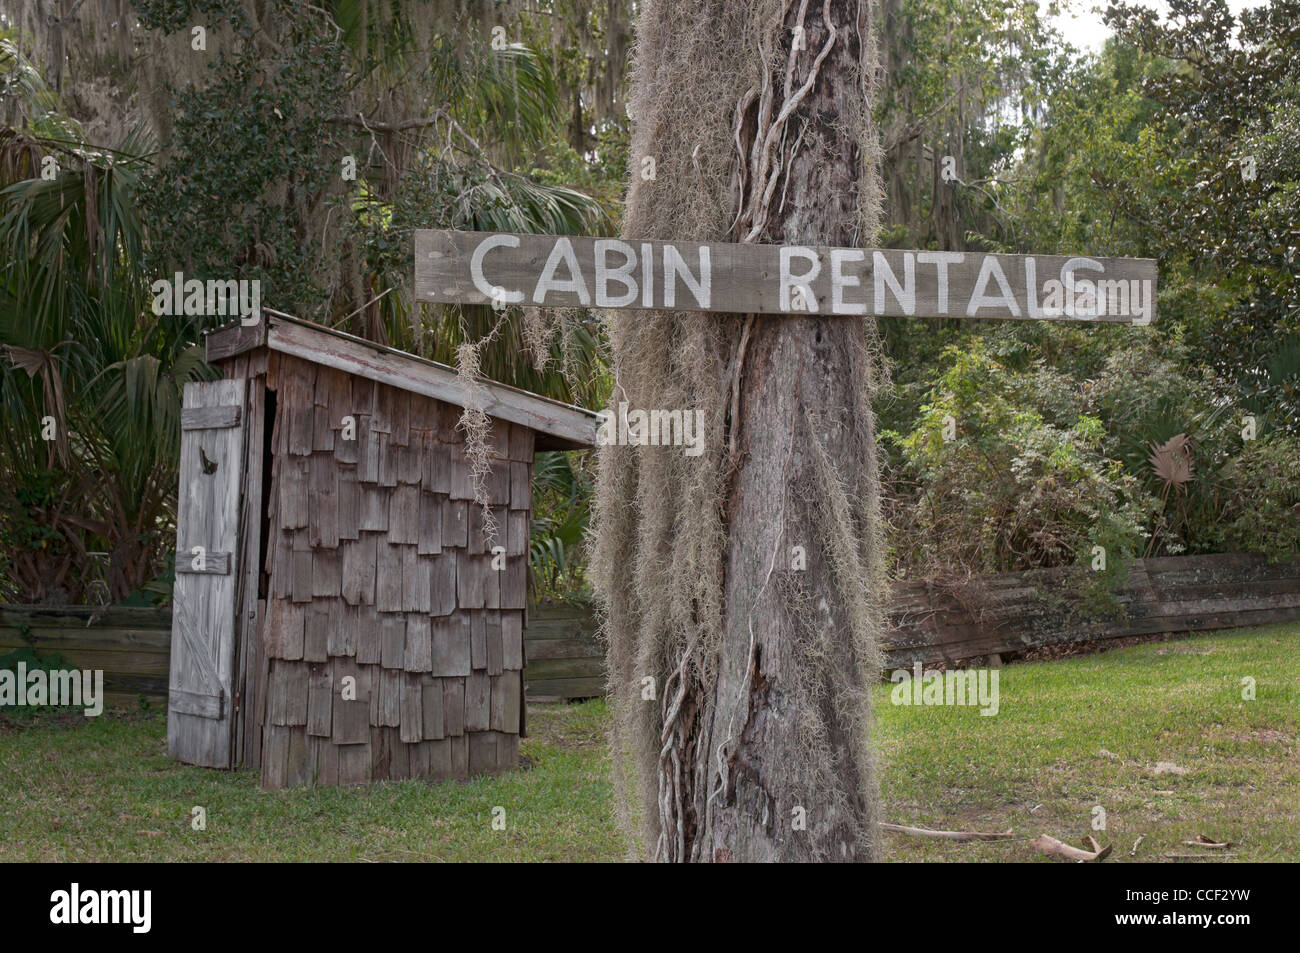 Cross Creek en Floride. Signe d'humour offre apparemment outhouse pour cabin rentals. Banque D'Images